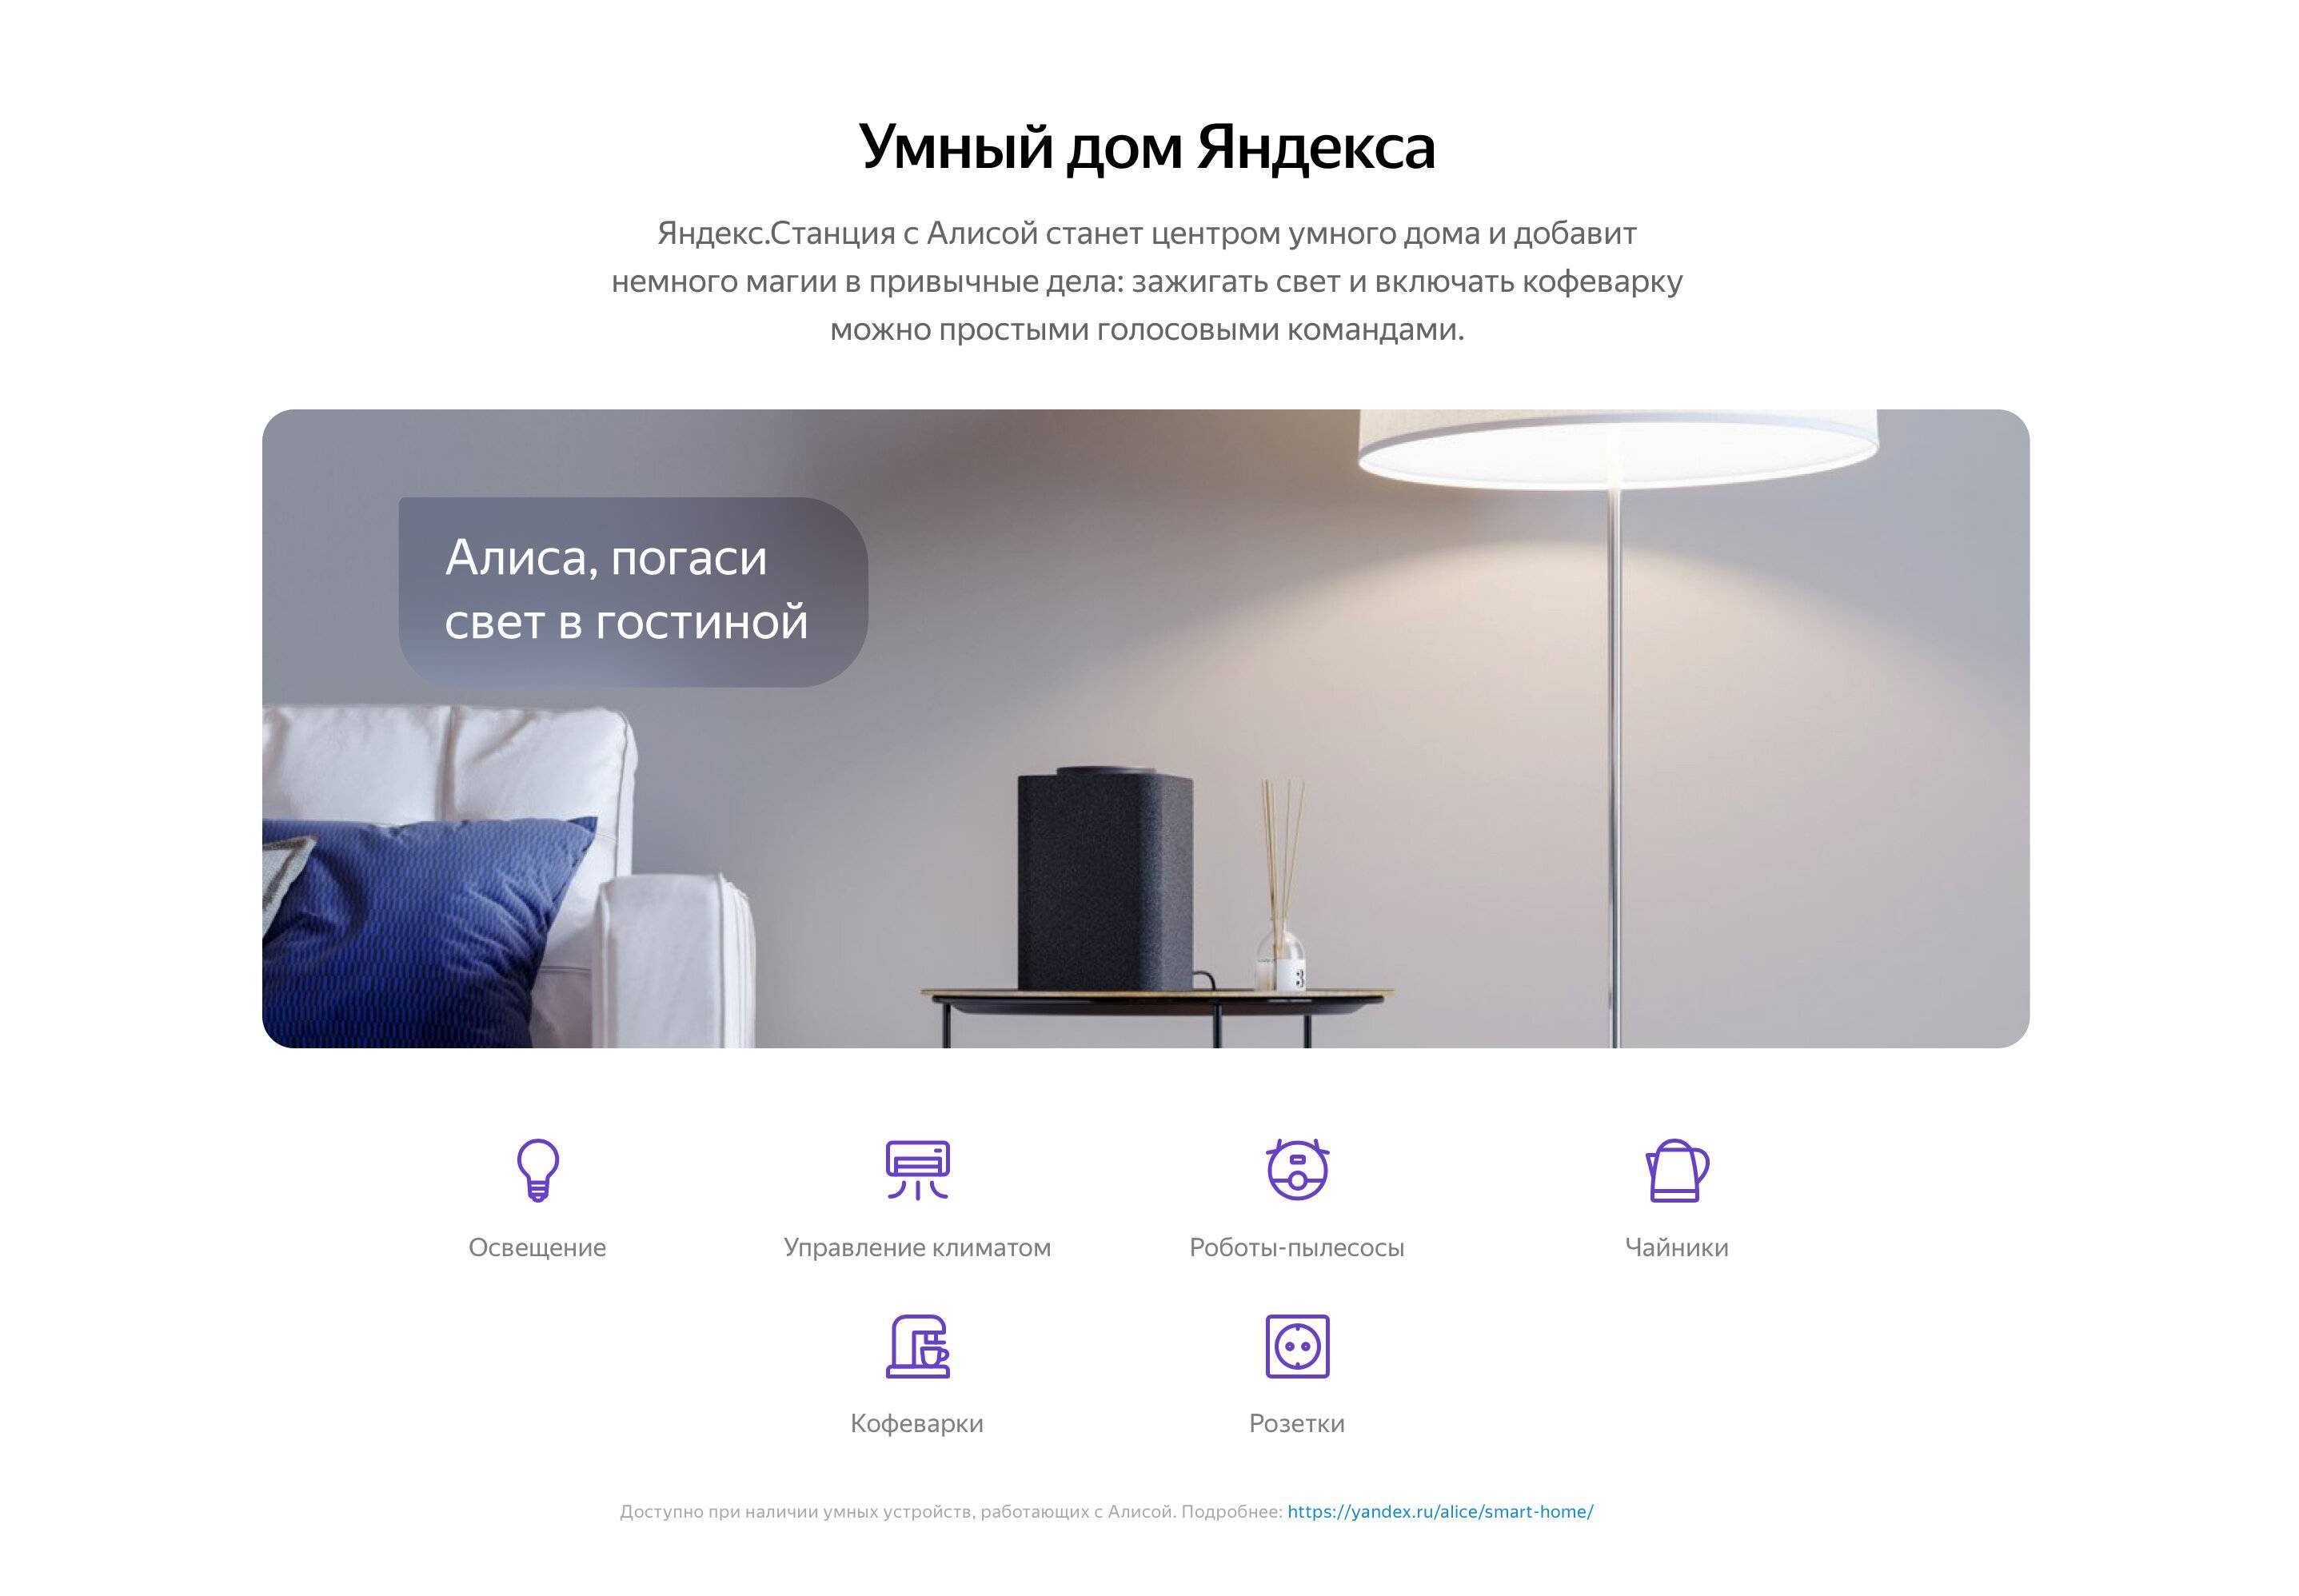 Умный дом от Яндекса под управлением Алисы – обзор